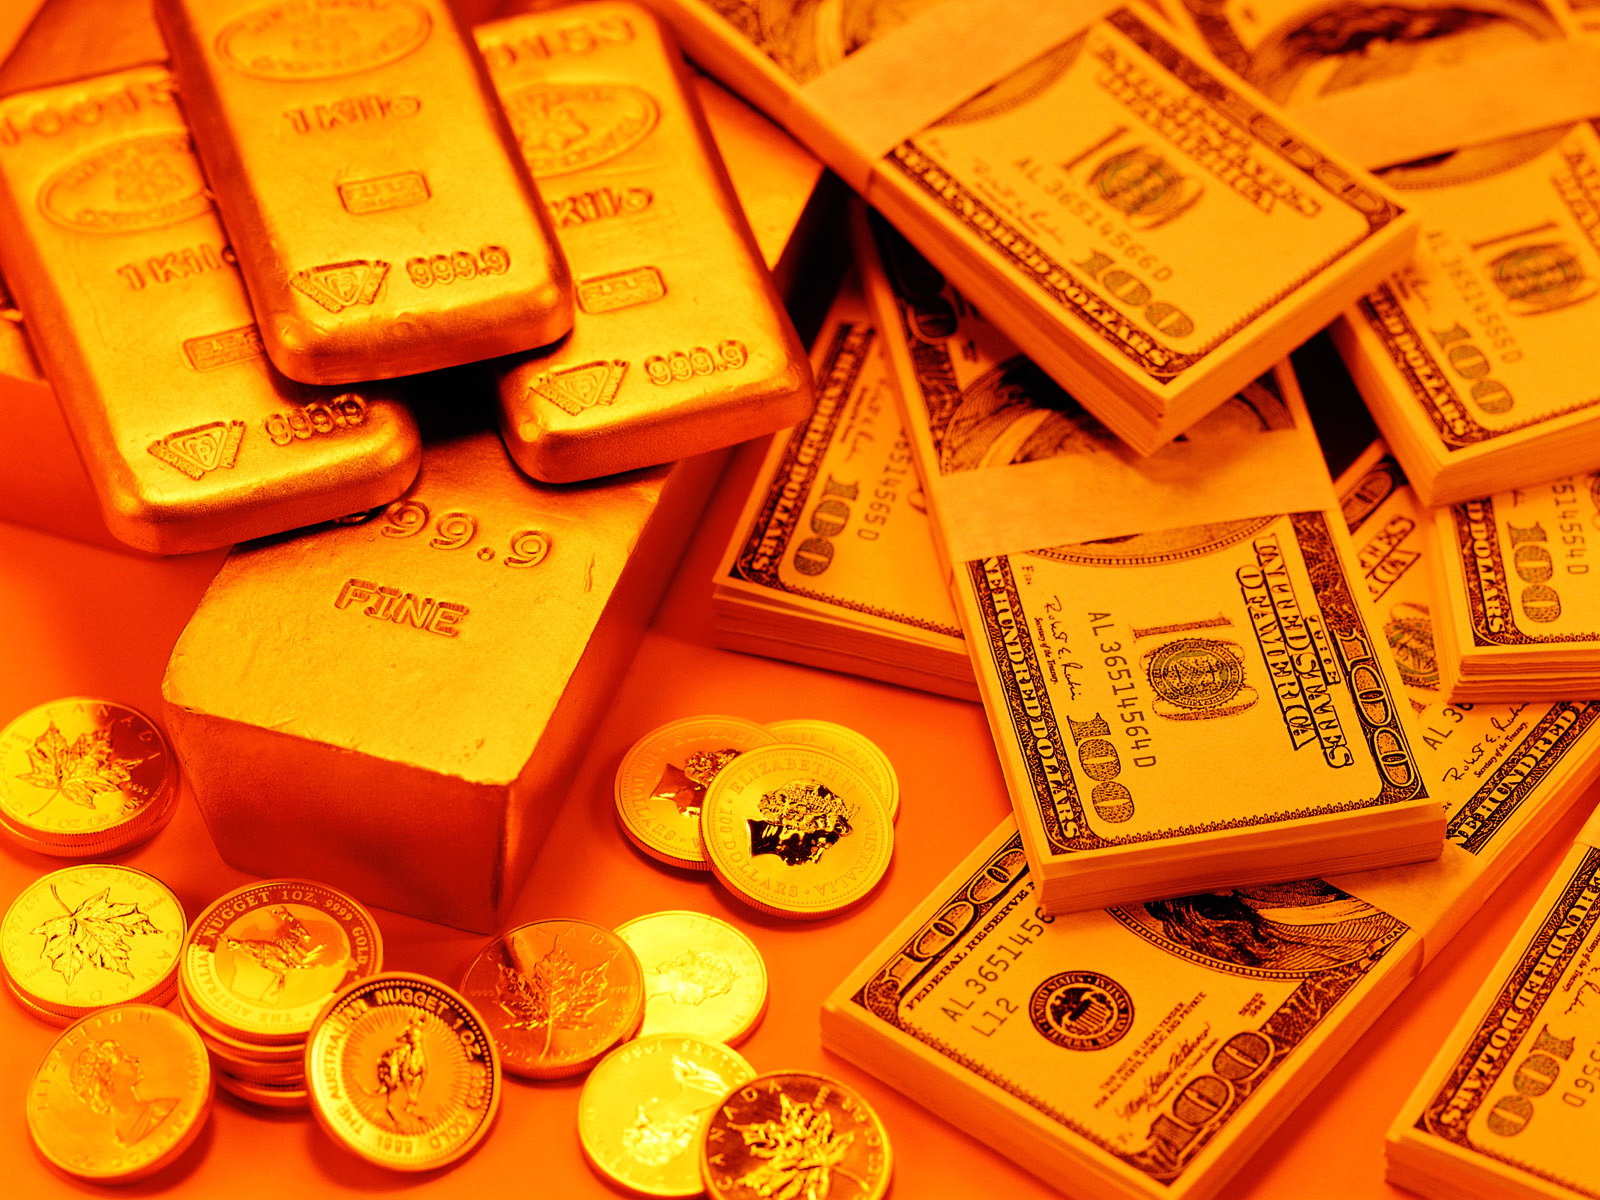 http://3.bp.blogspot.com/-b2AXnIHPzS0/UF4ZfOIO2-I/AAAAAAAAAO4/owAkOpMU4uI/s1600/The_financial_crisis_Wallpaper_Gold_Gold_Reserve_packets-of-money.jpg